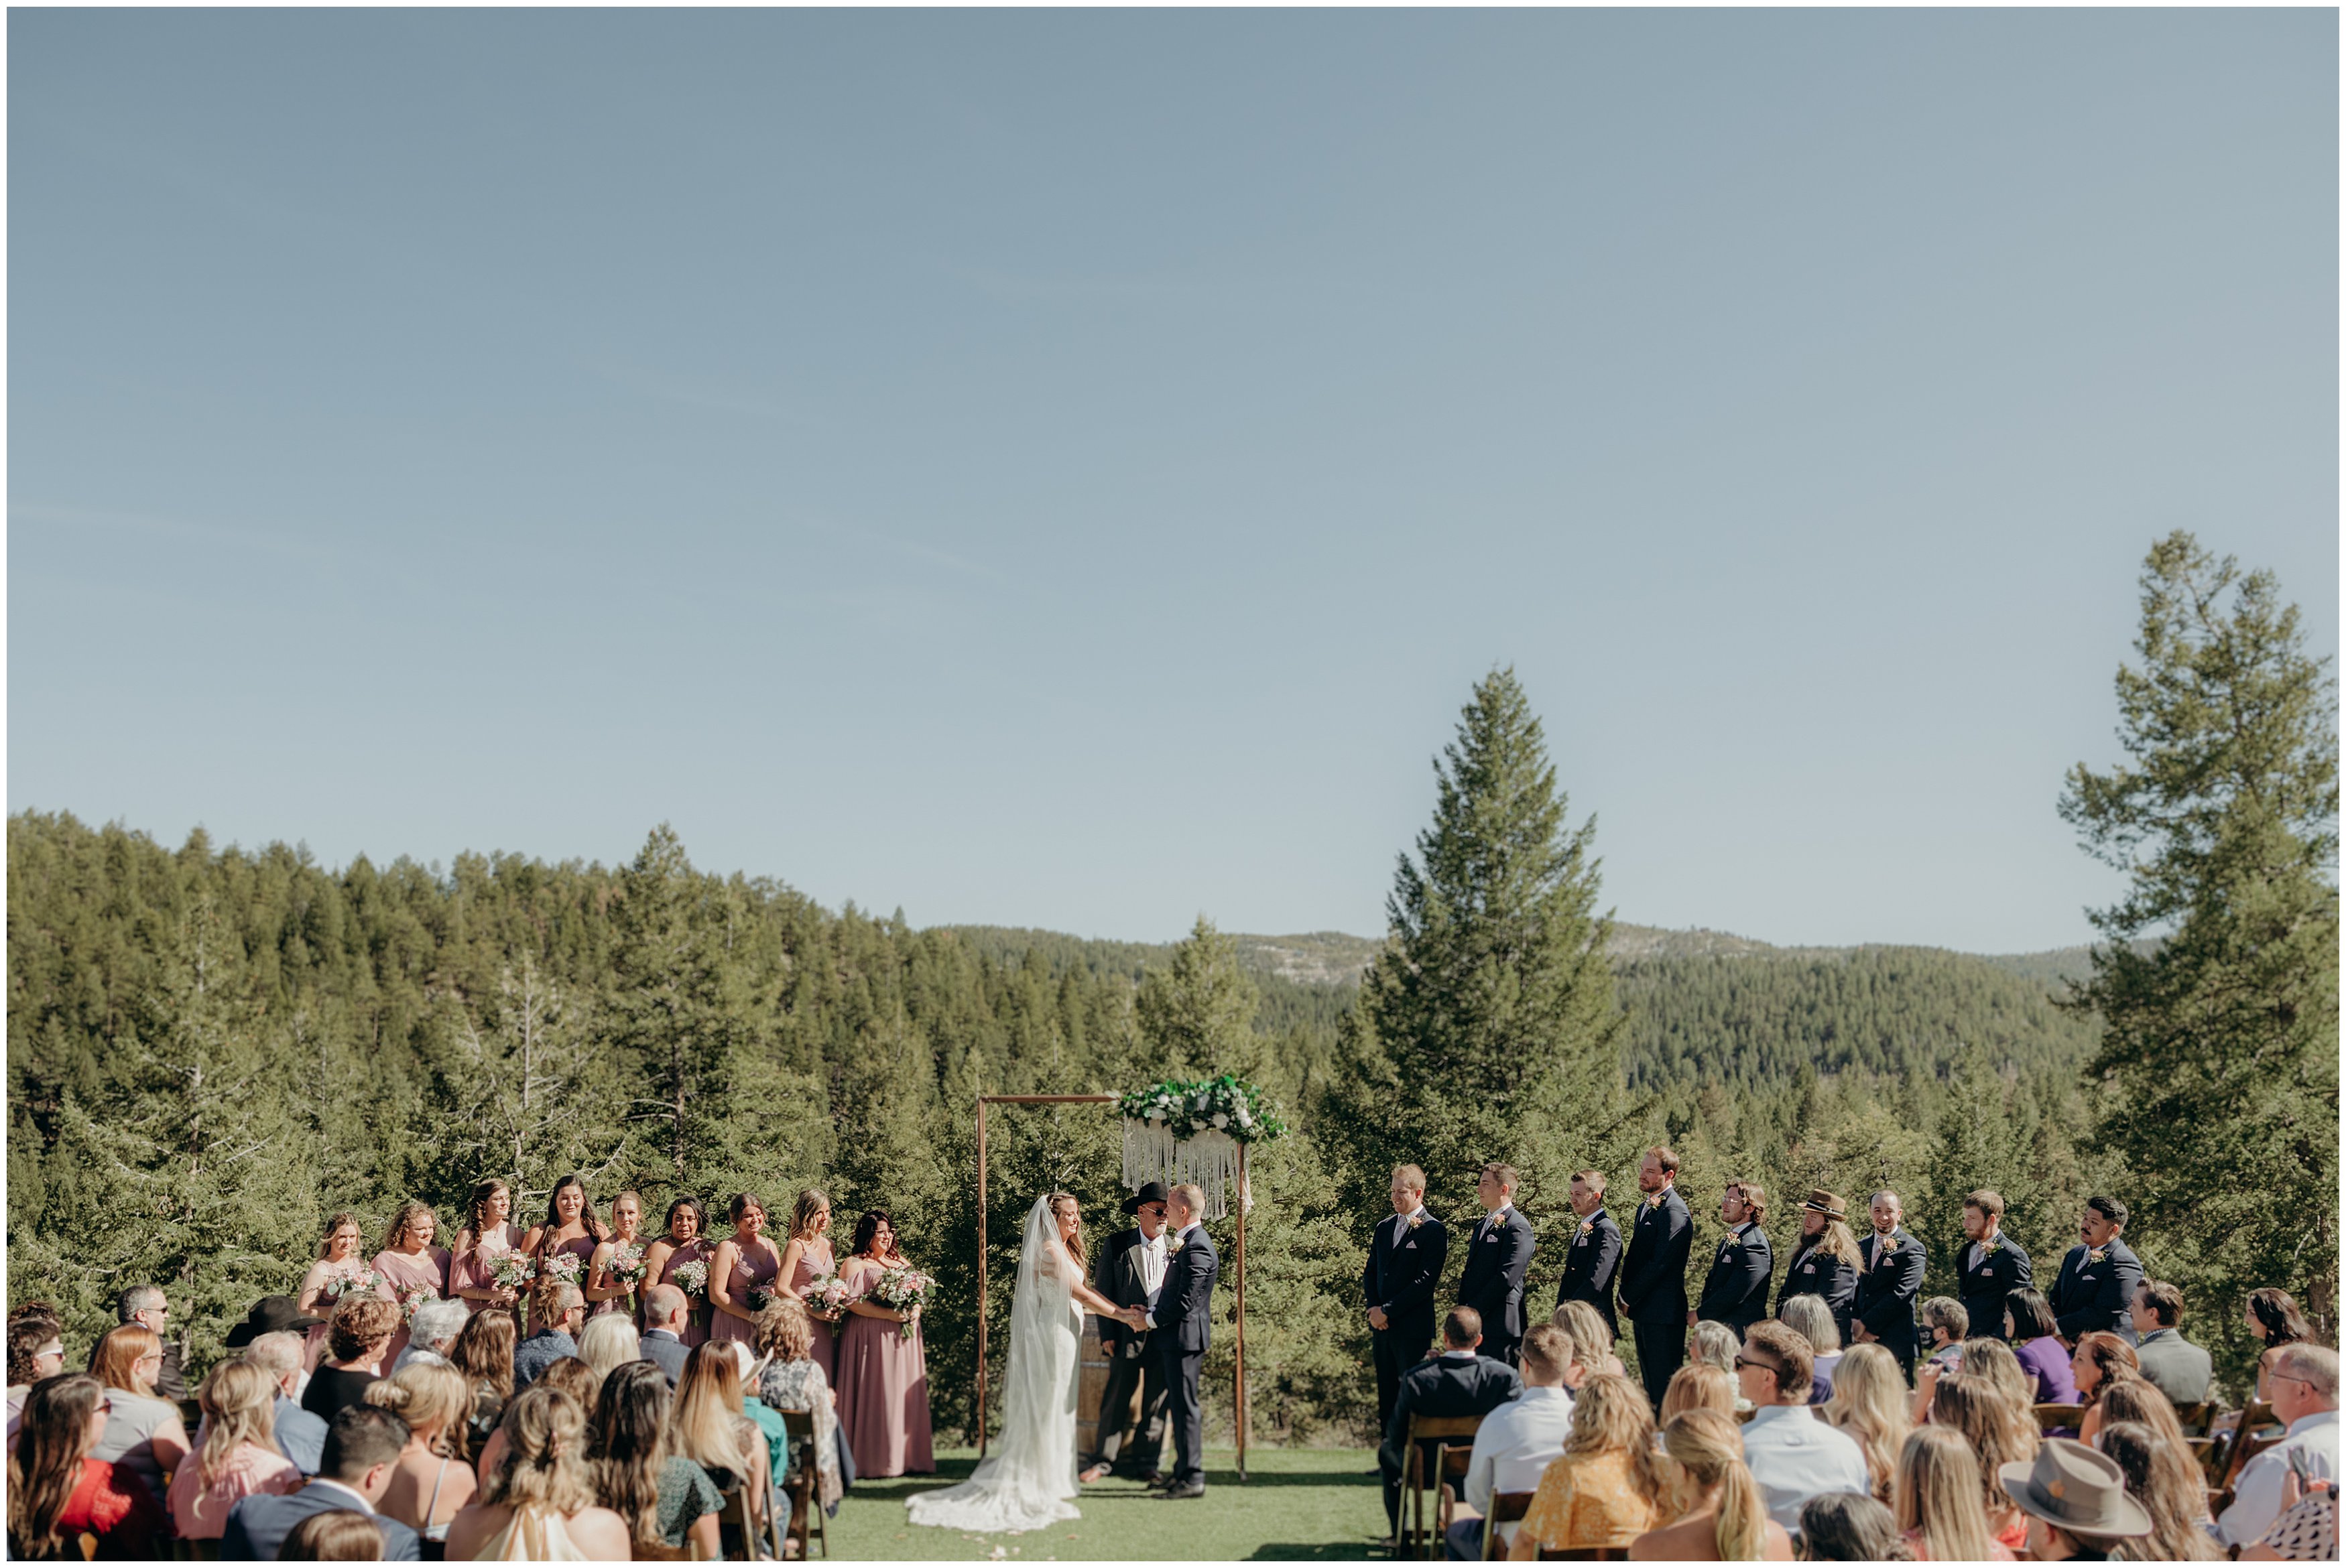 The Woodlands Colorado Morrison Wedding venue